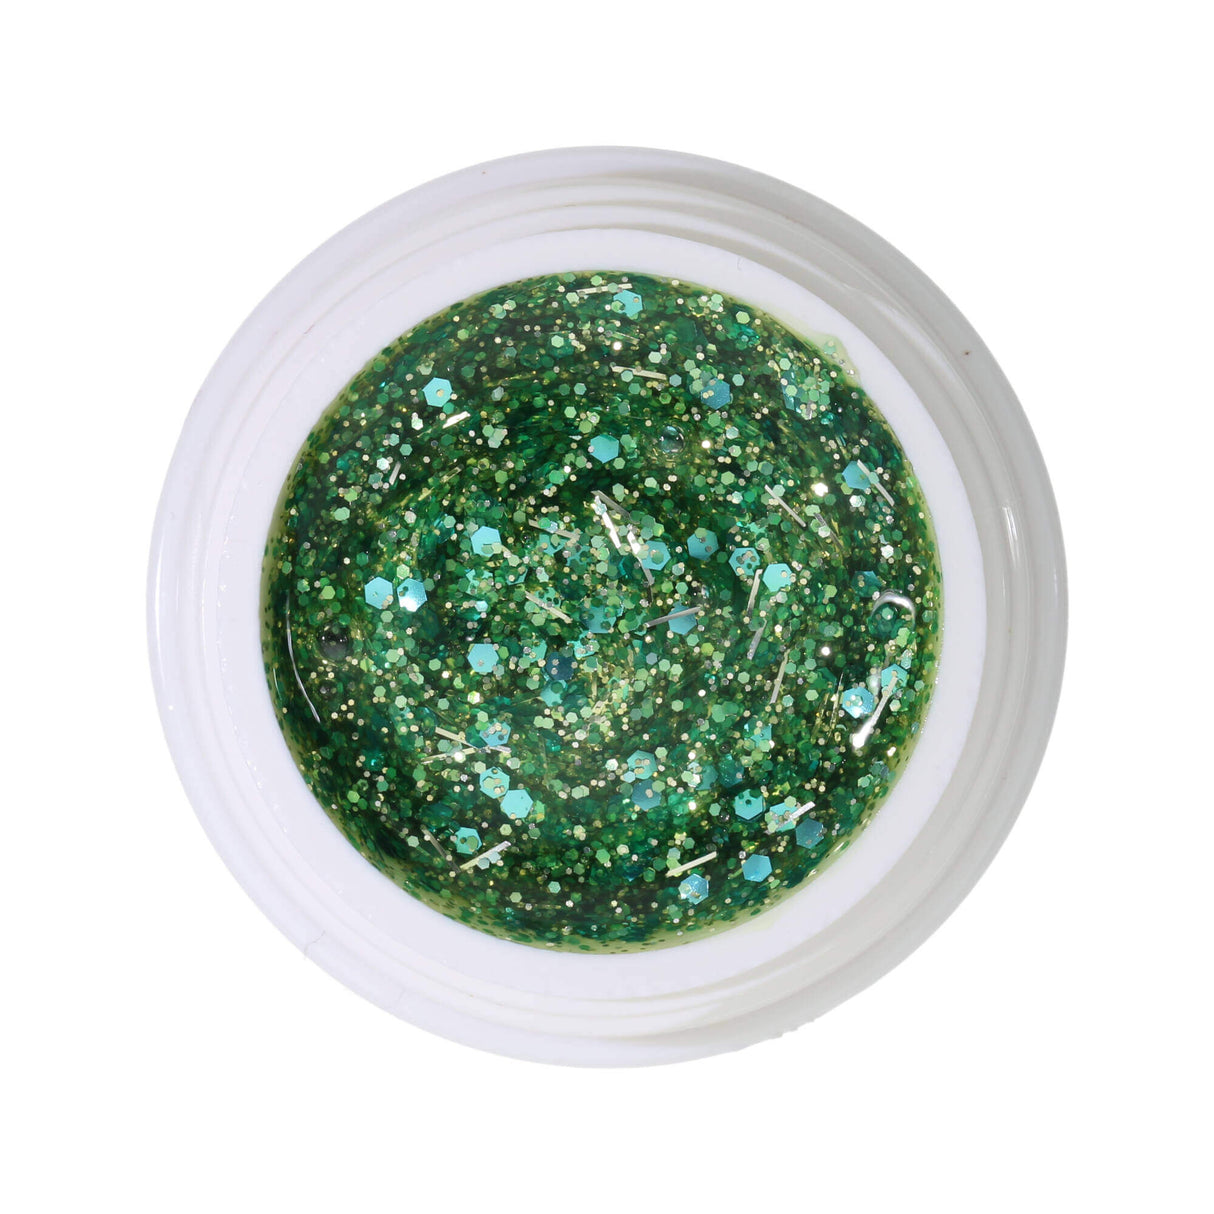 #285 Premium-GLITTER Color Gel 5ml Mintgrünes Glittergel gemischt mit türkisem Glitter und silbernen Glitterfäden